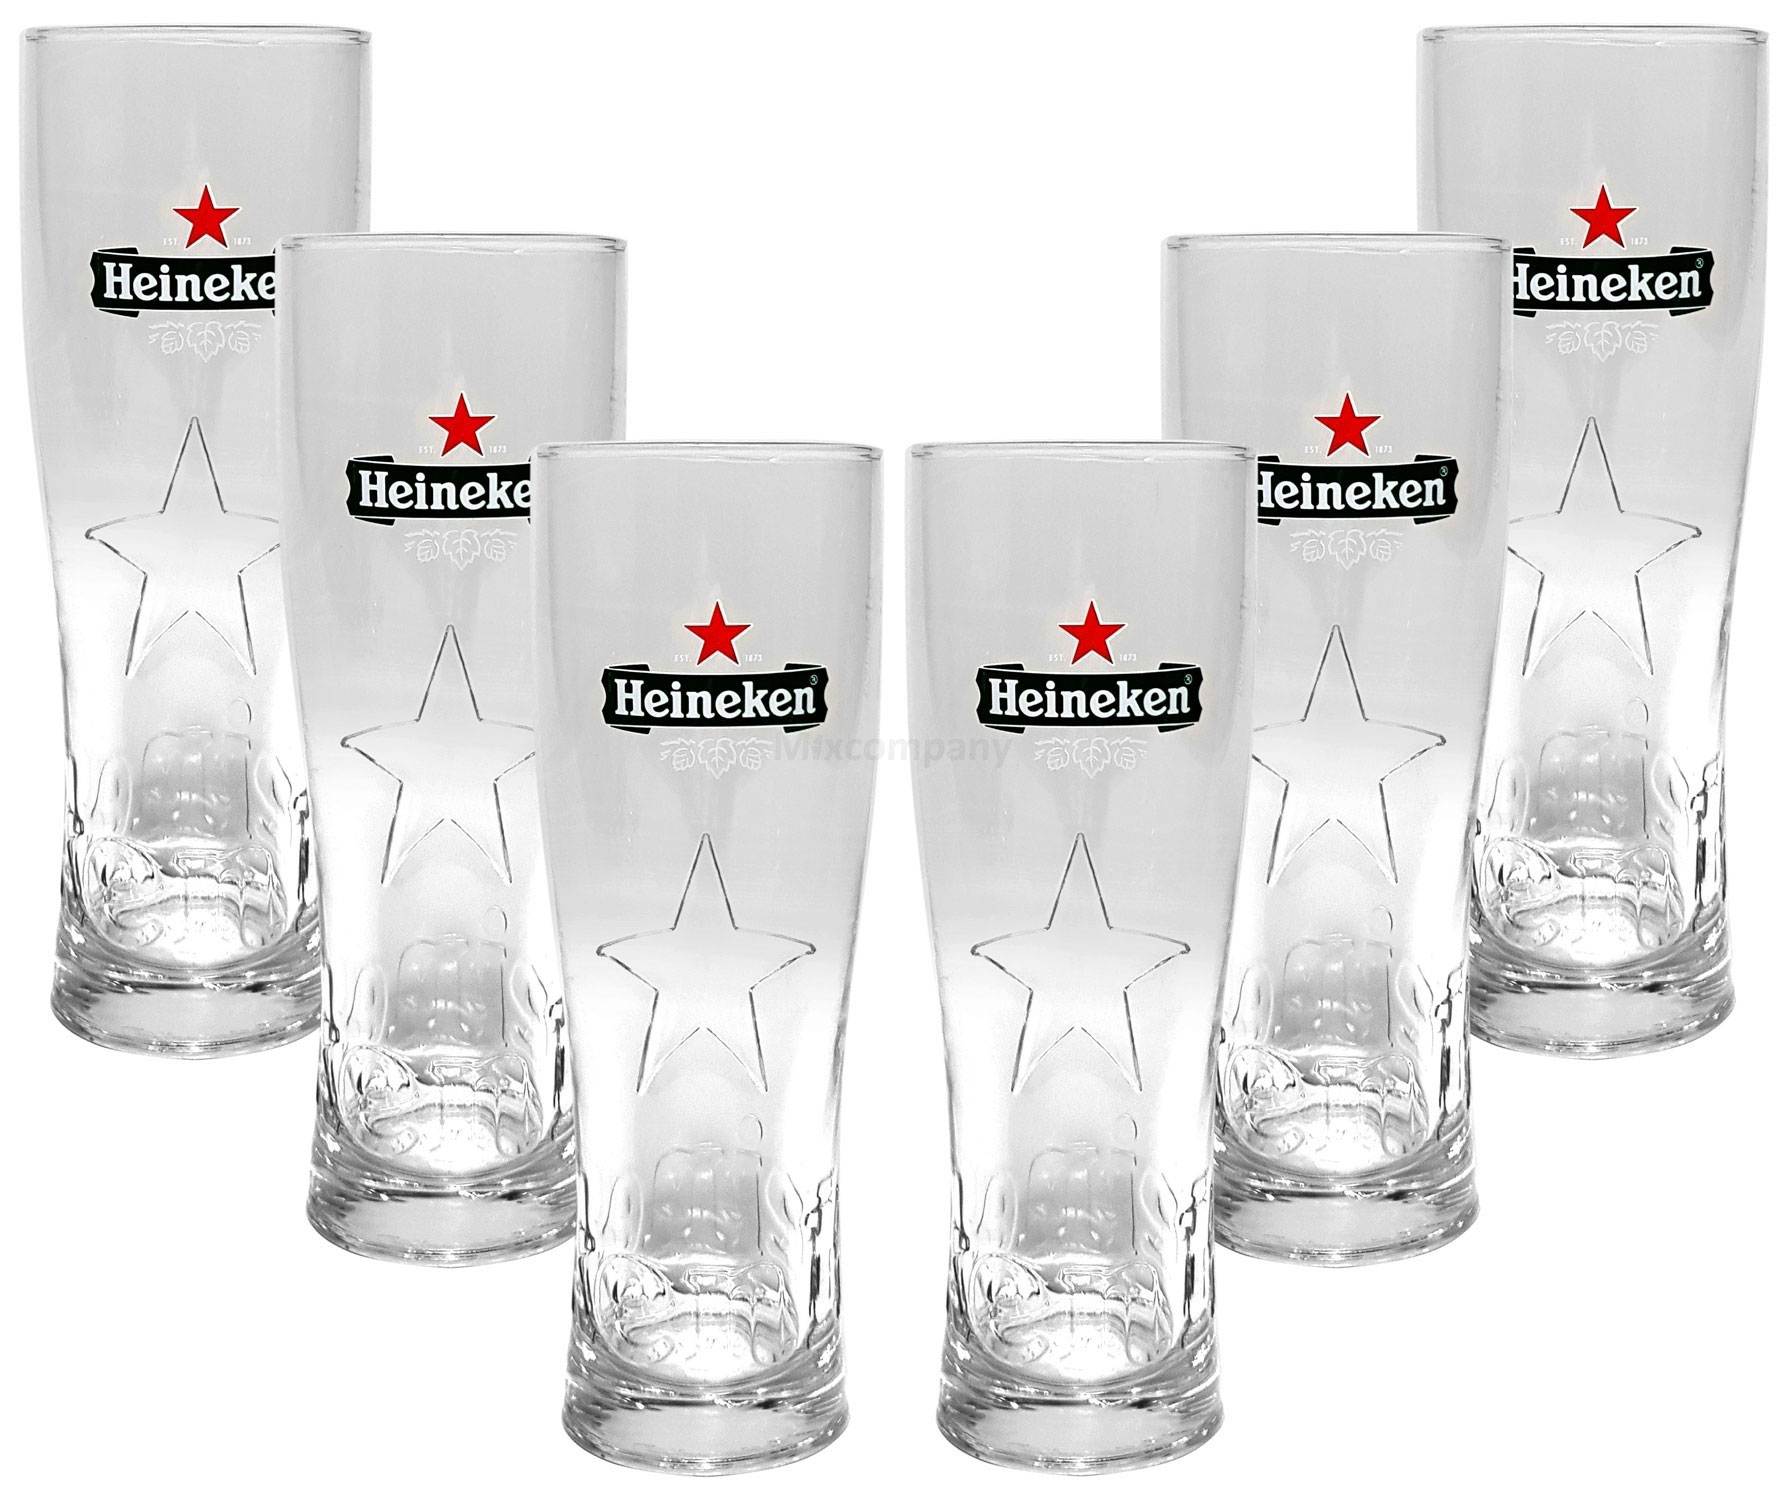 Heineken Bier 0,25 Glas Gläser Set - 6x Gläser 0,25 GEEICHT Champions League